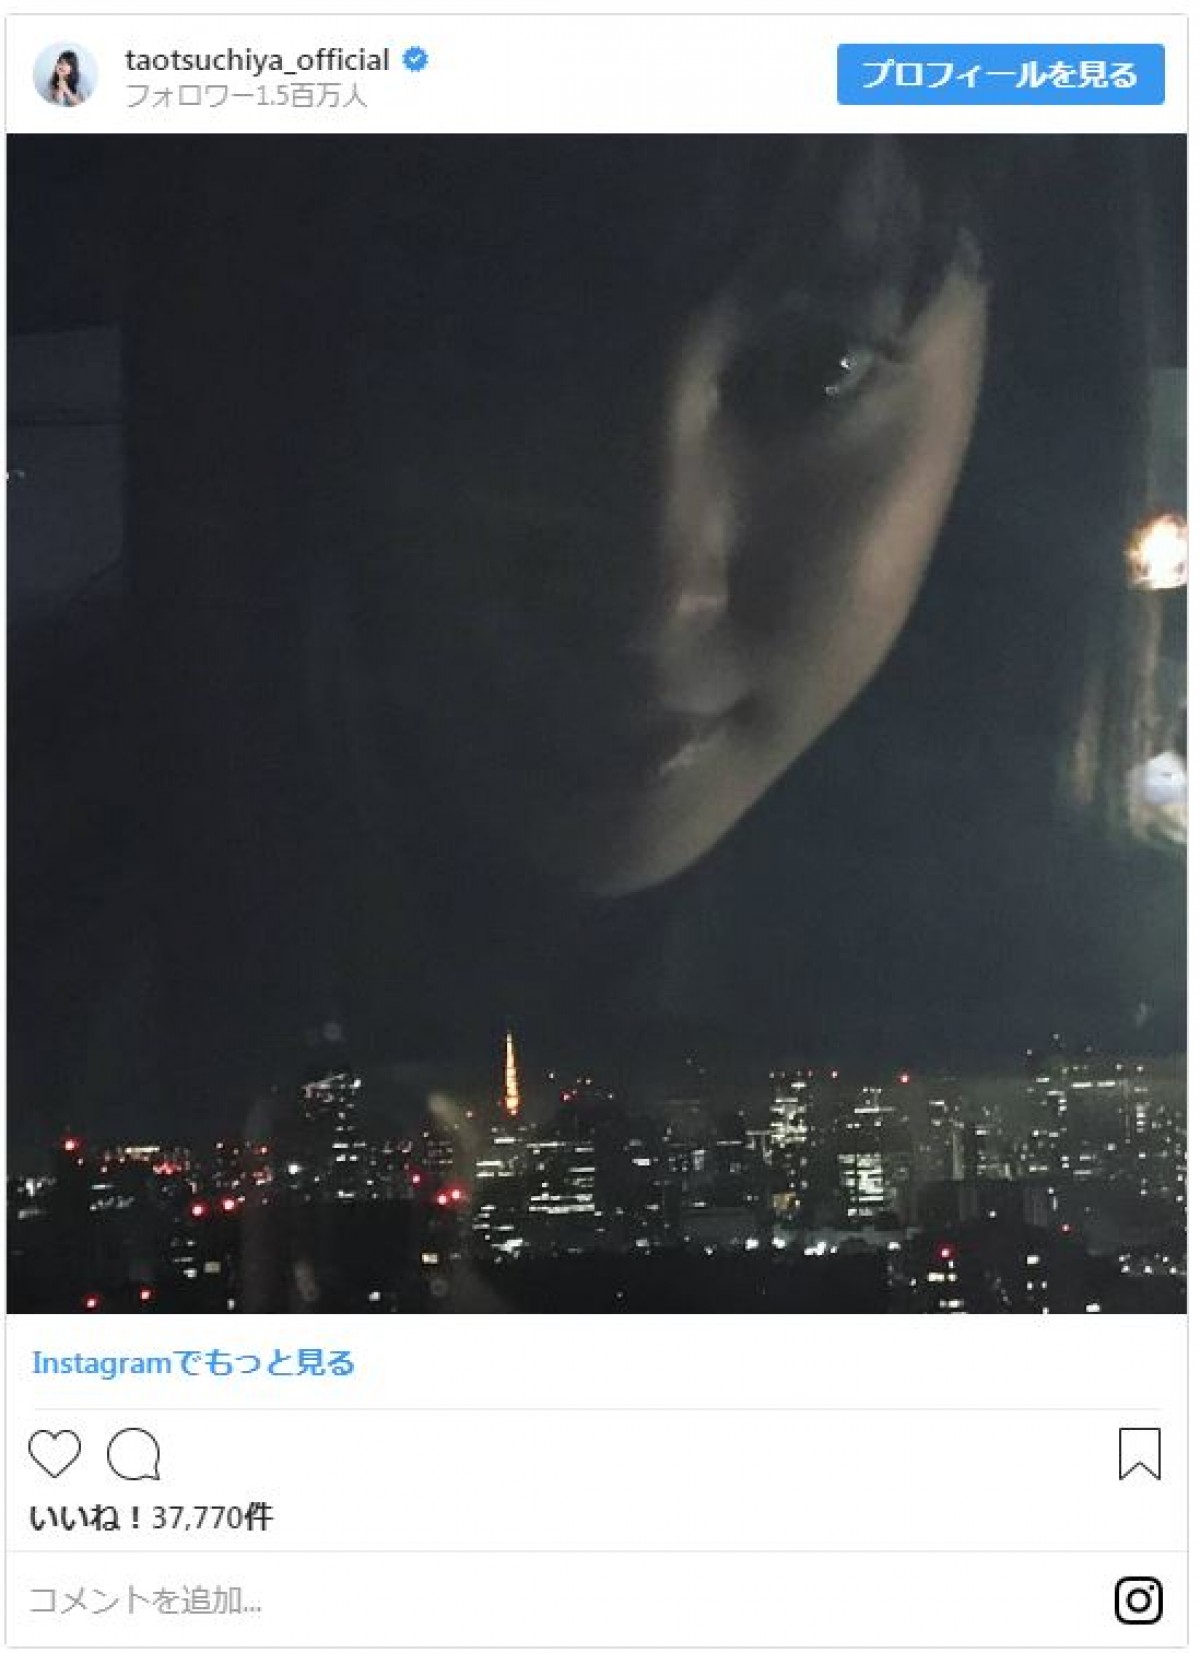 夜景に浮かぶ土屋太鳳…偶然撮れたショットにファン「心霊写真みたい」